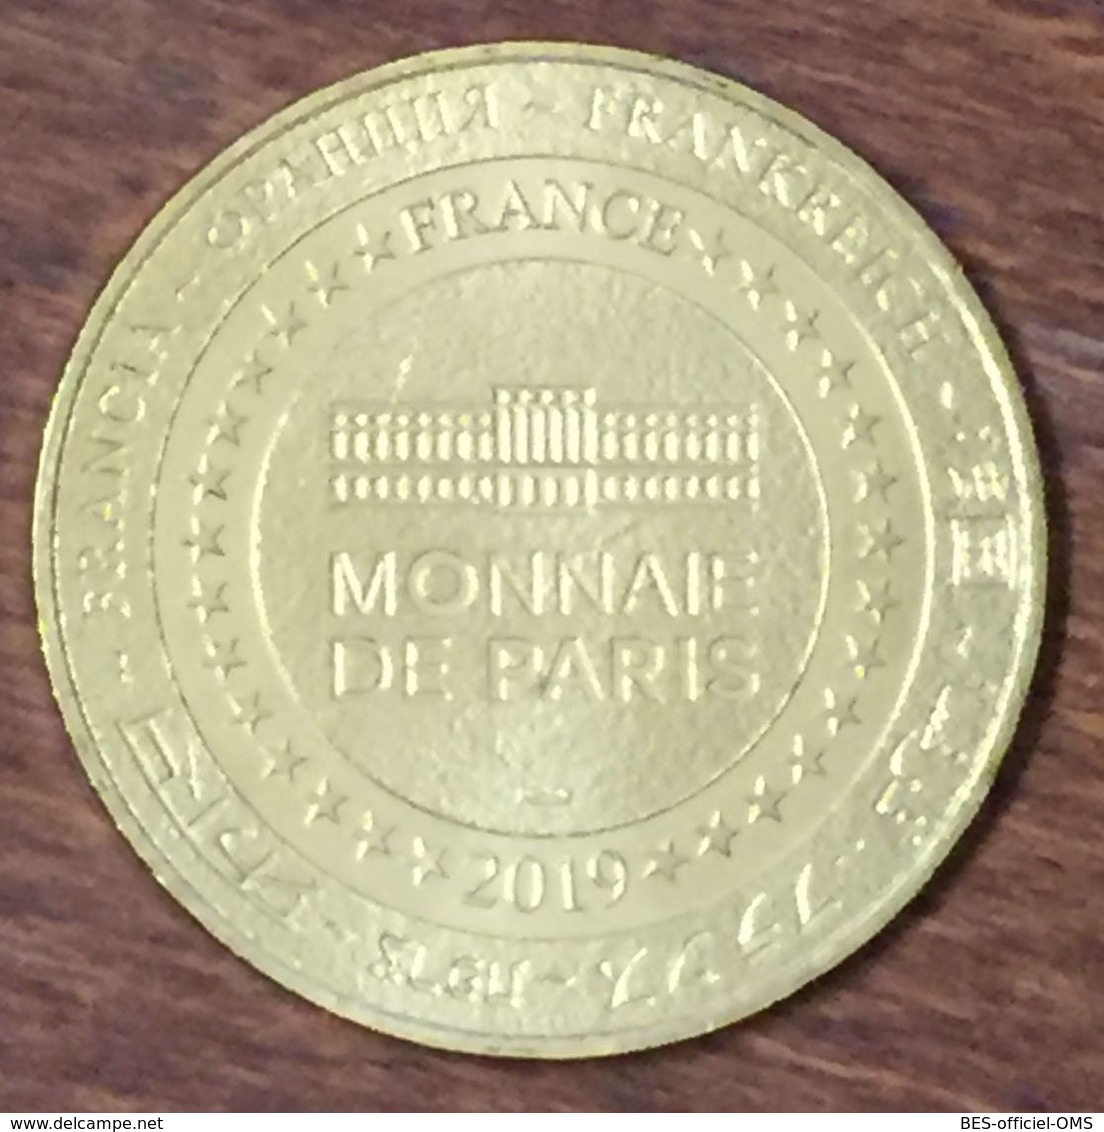 80 SAILLY FLIBEAUCOURT TOURISME BAIE DE SOMME MDP 2019 MÉDAILLE MONNAIE DE PARIS JETON TOURISTIQUE MEDALS COINS TOKENS - 2019